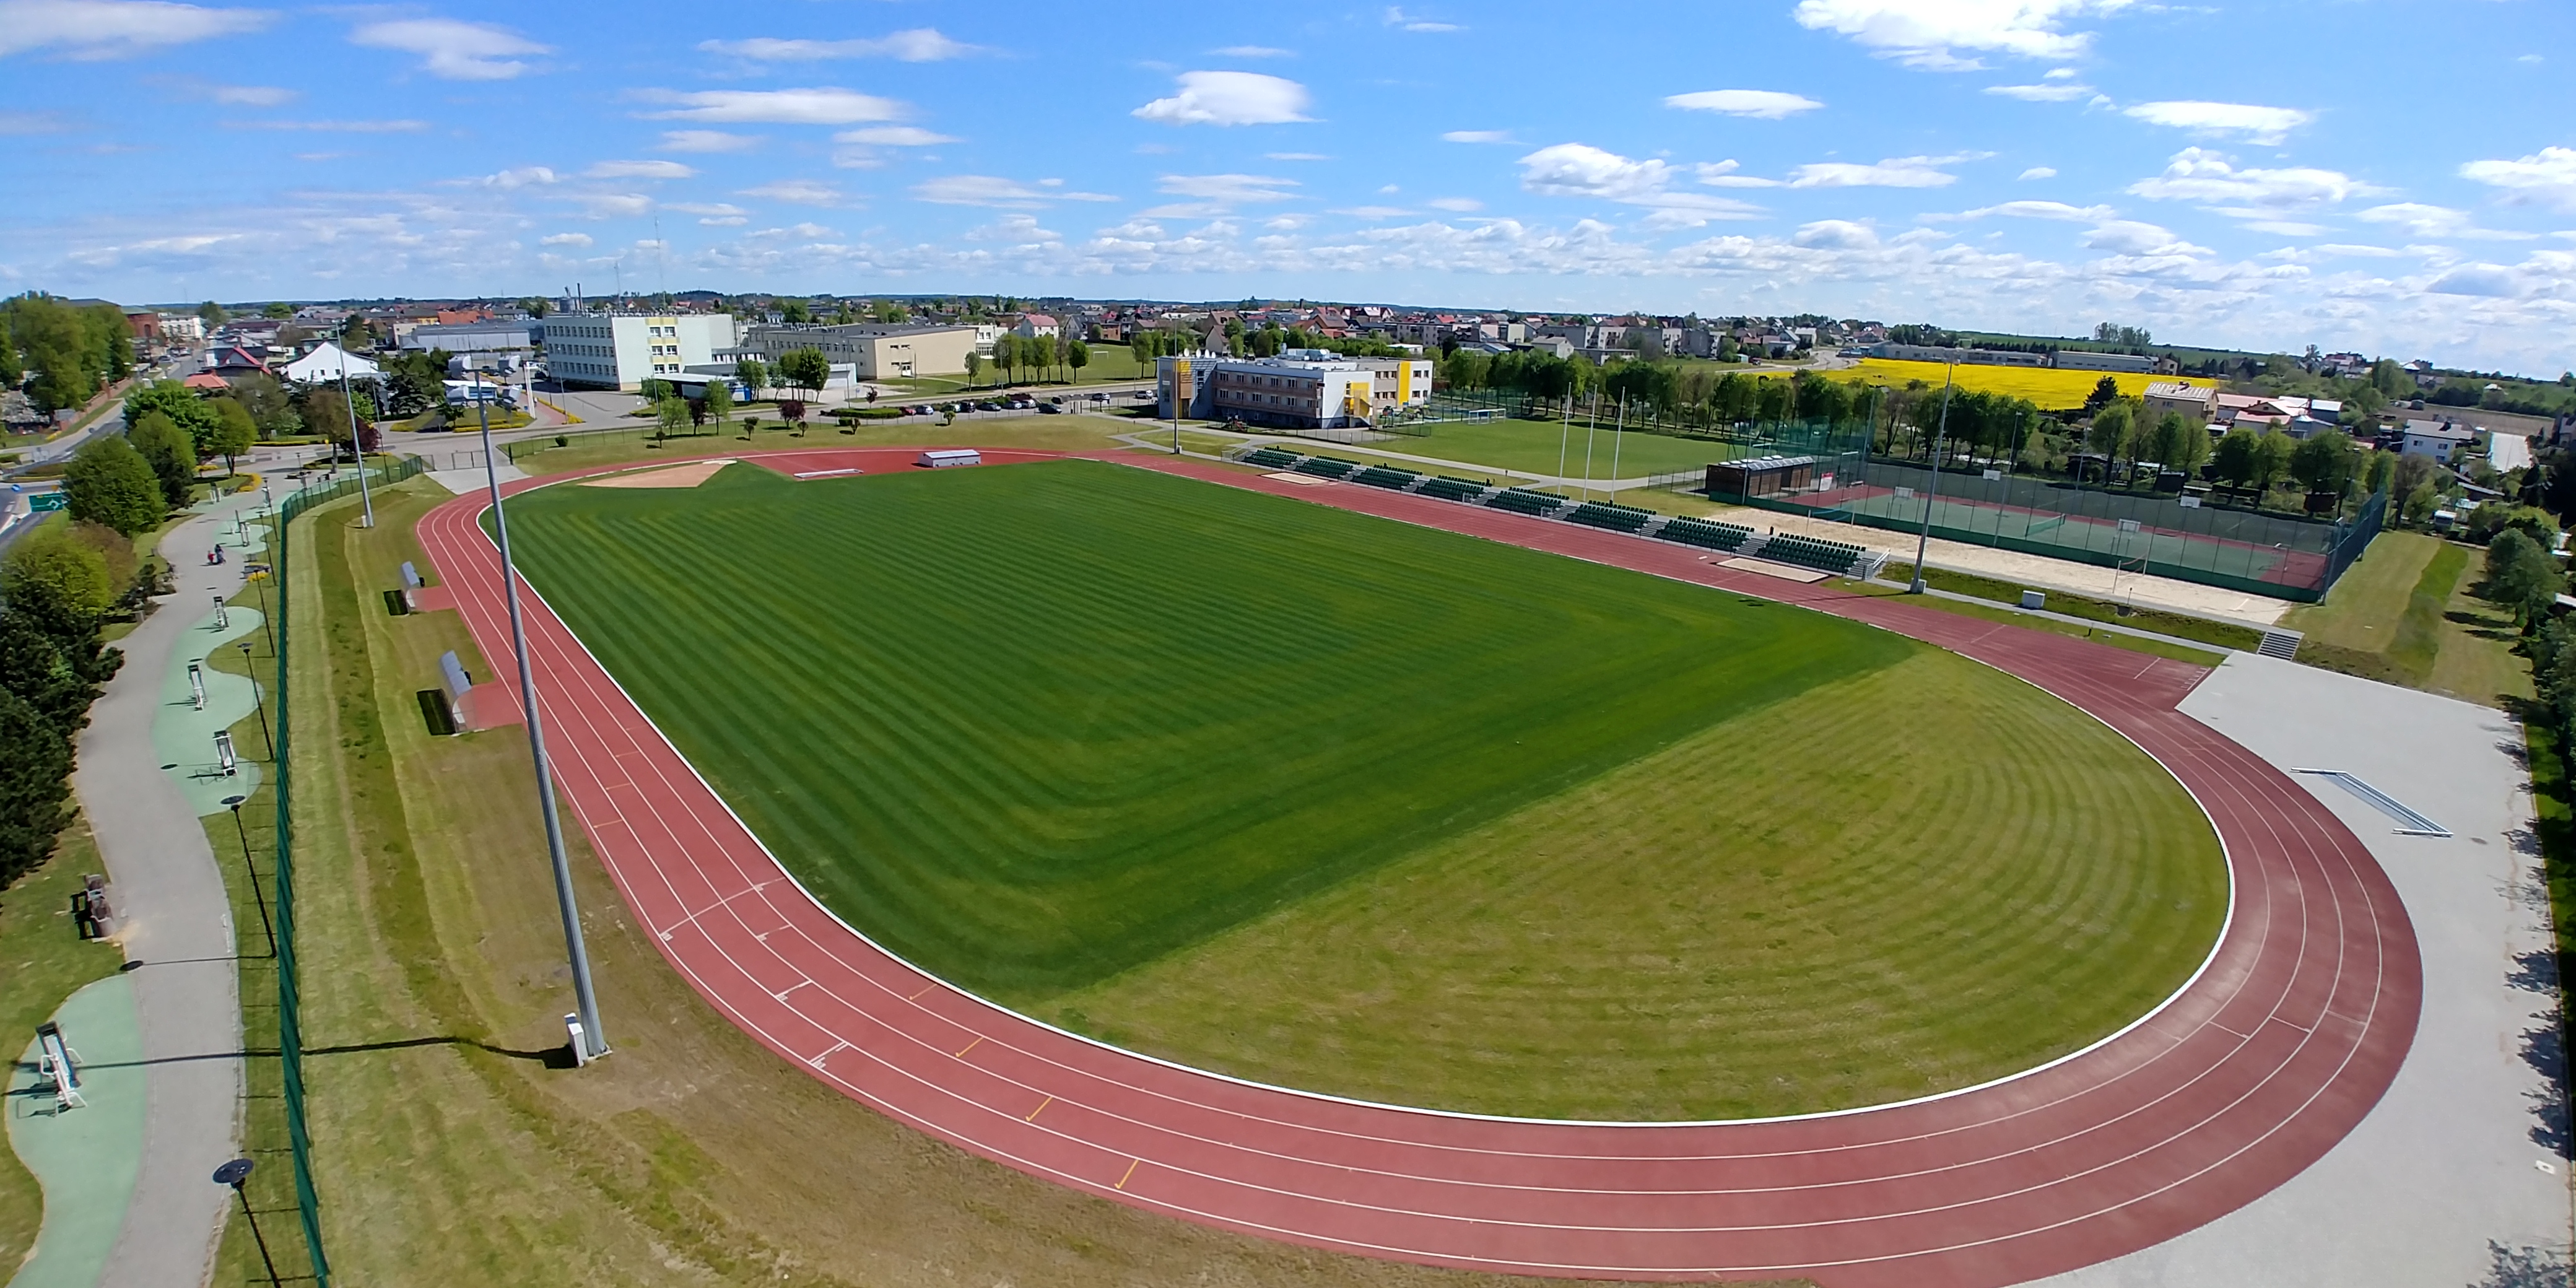 Stadion Miejski w Brusach - fotografia z podnośnika 